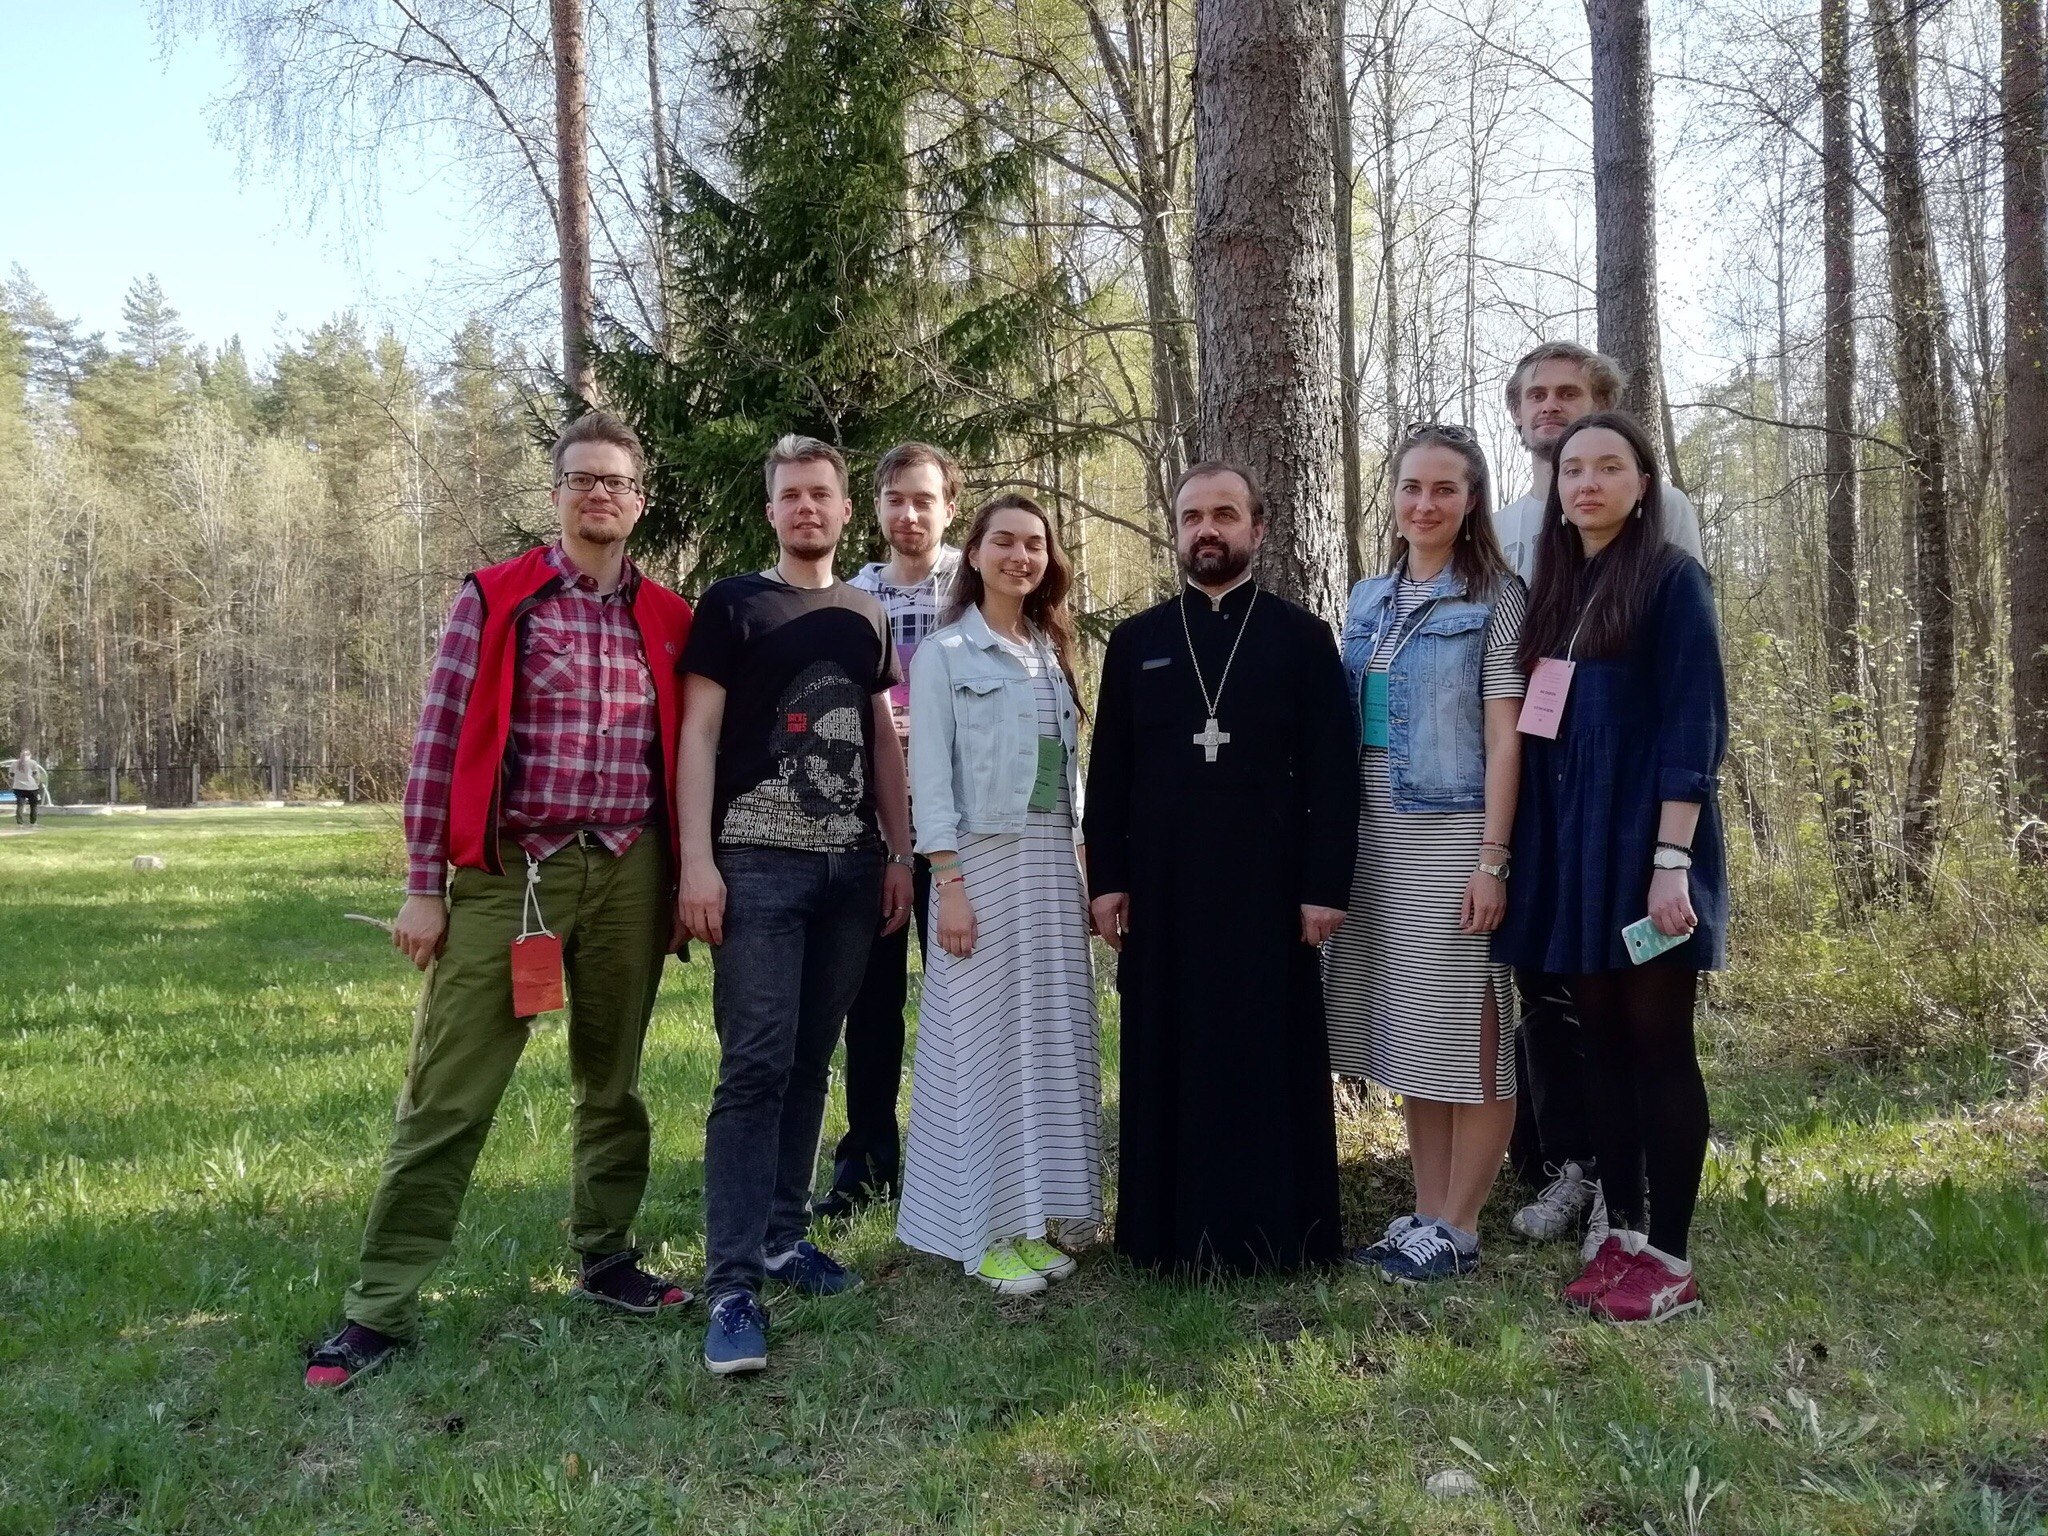 Настоятель Феодоровского собора и команда феомолодежи приняли участие в симпозиуме православных молодежных общин